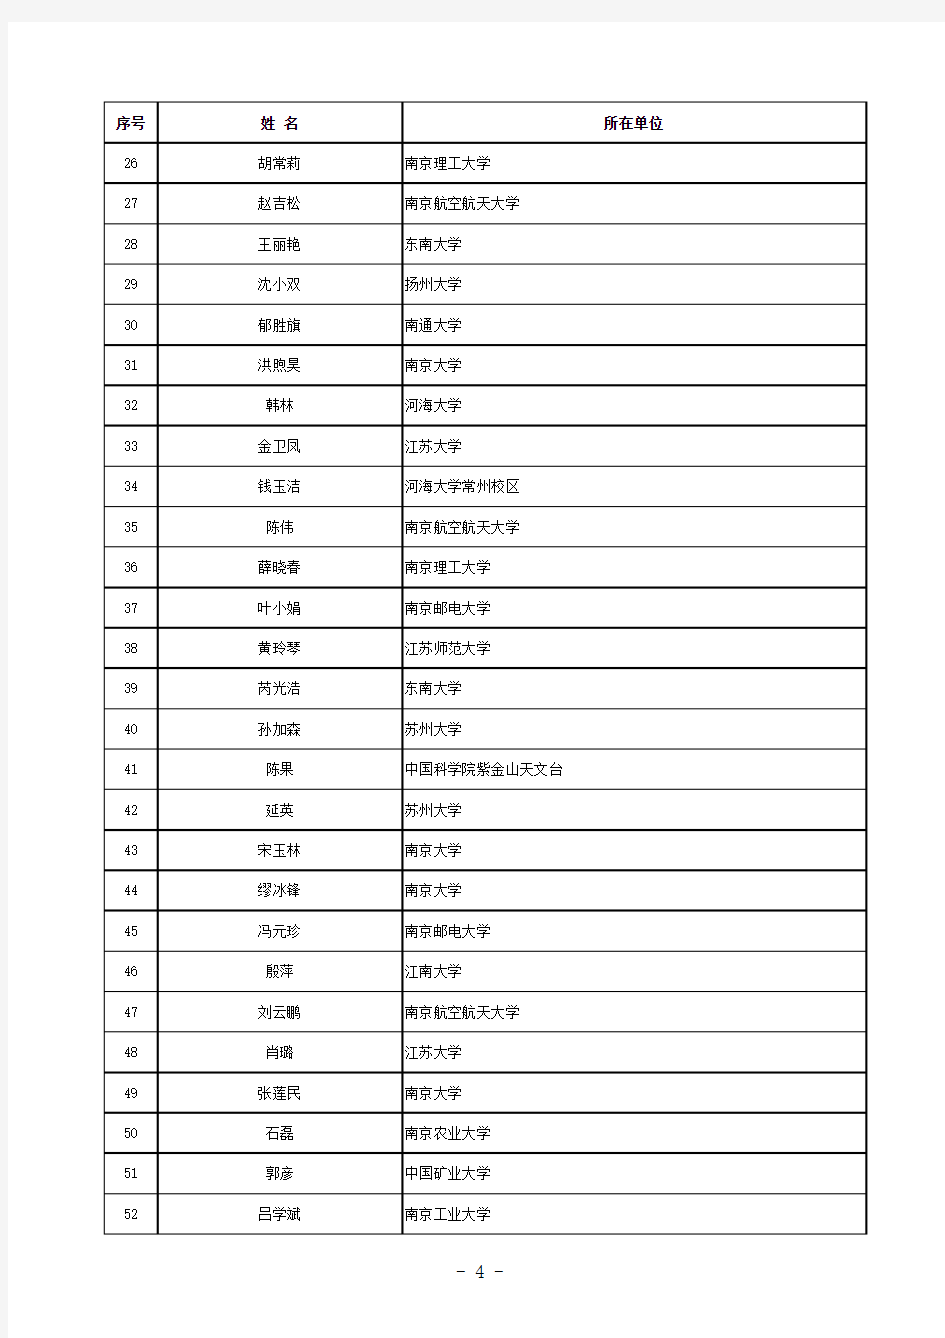 2015江苏省青年基金获得者名单